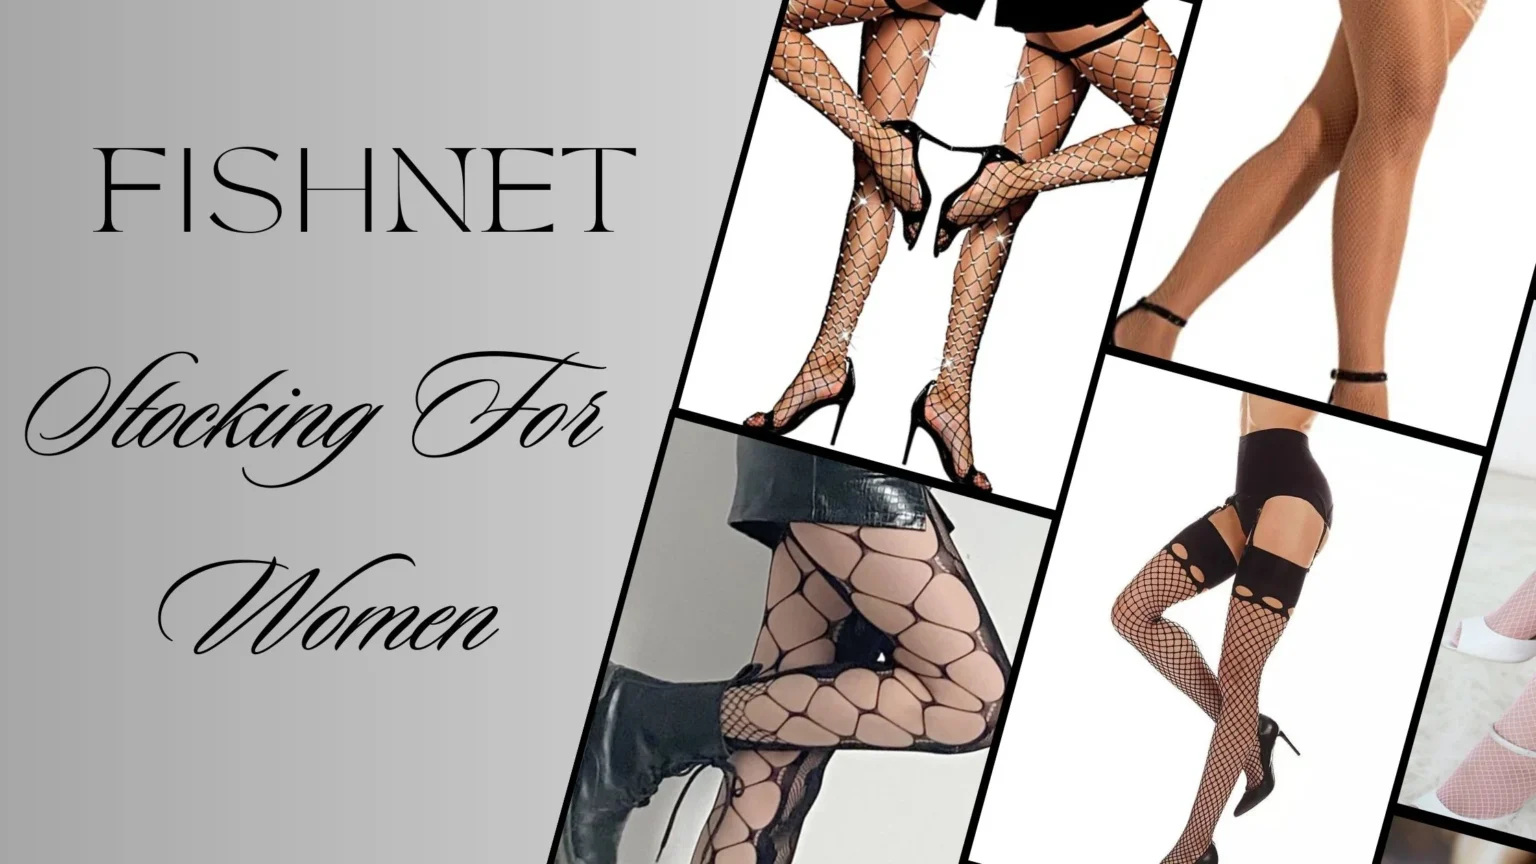 Fishnet stockings for women